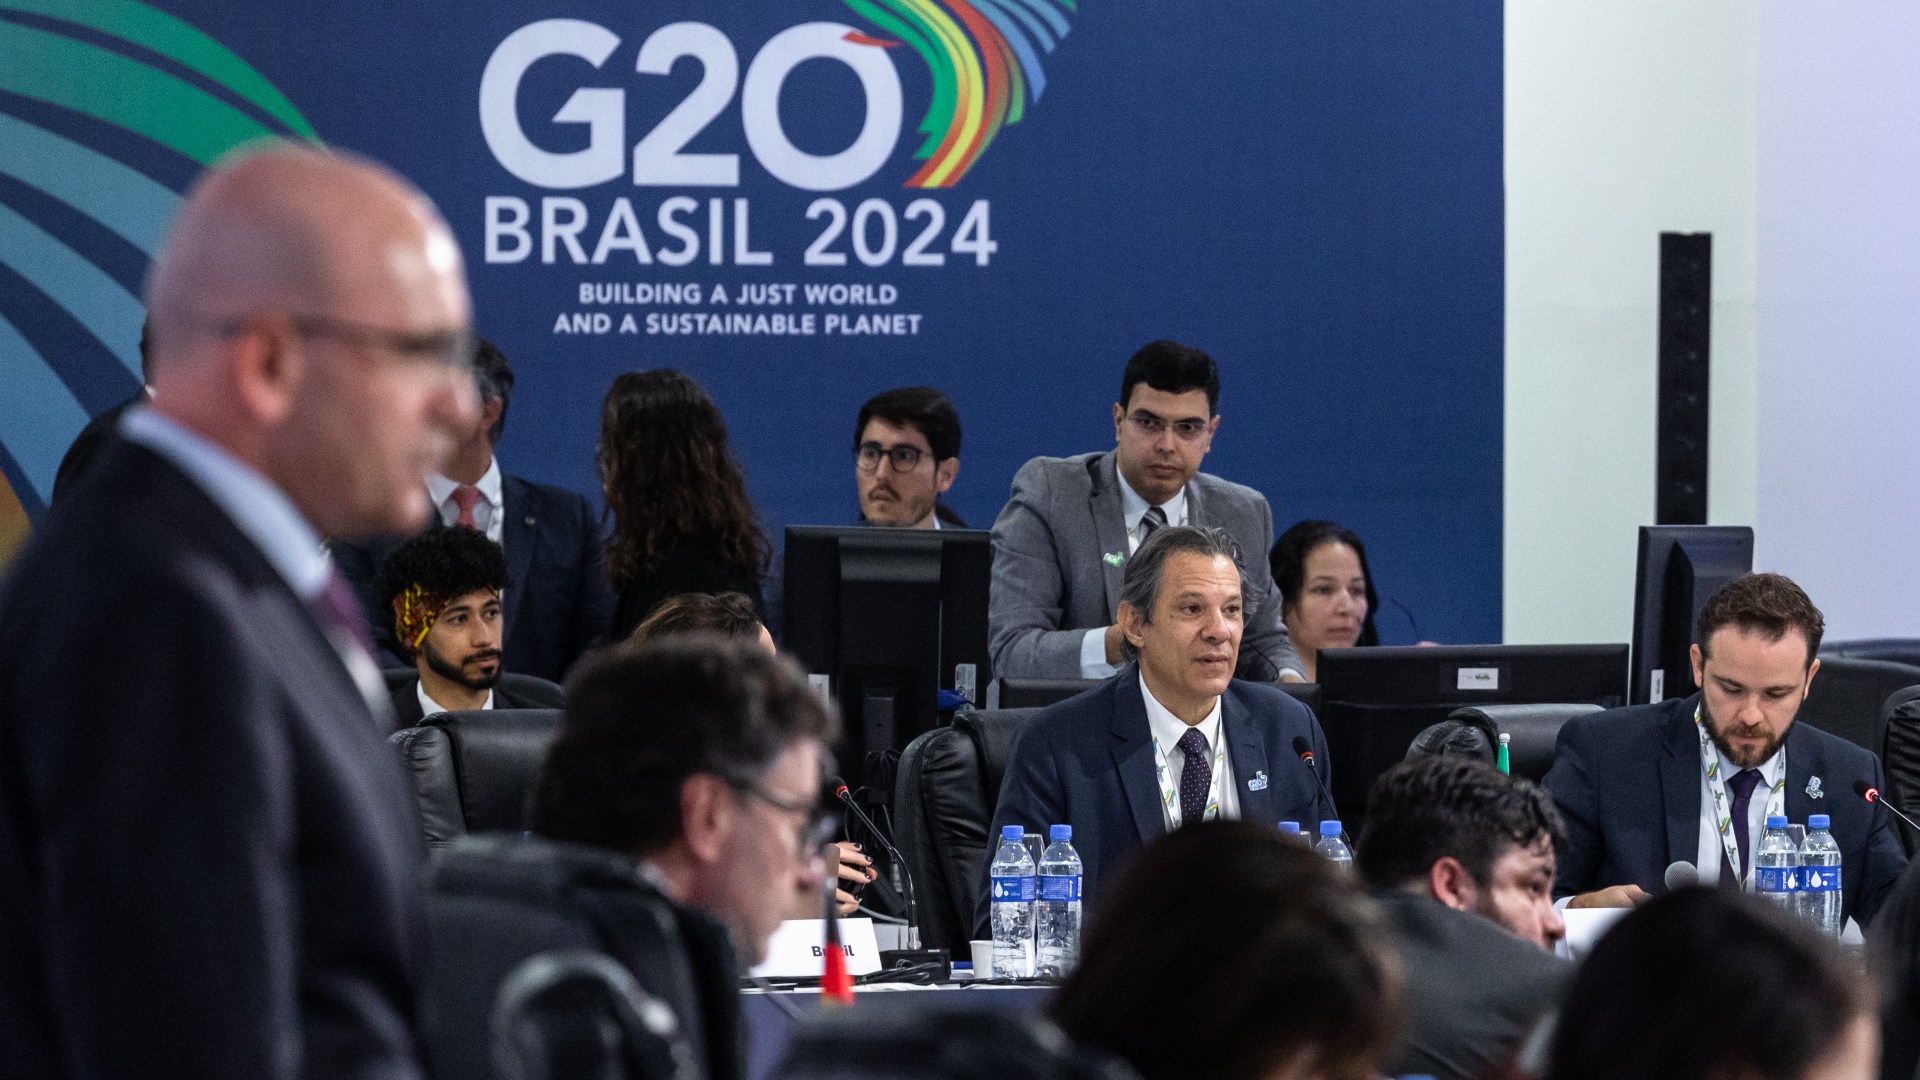  Menghitung Hari Putusan Pajak Orang Terkaya, G20 Brasil Berani Ketuk Palu?